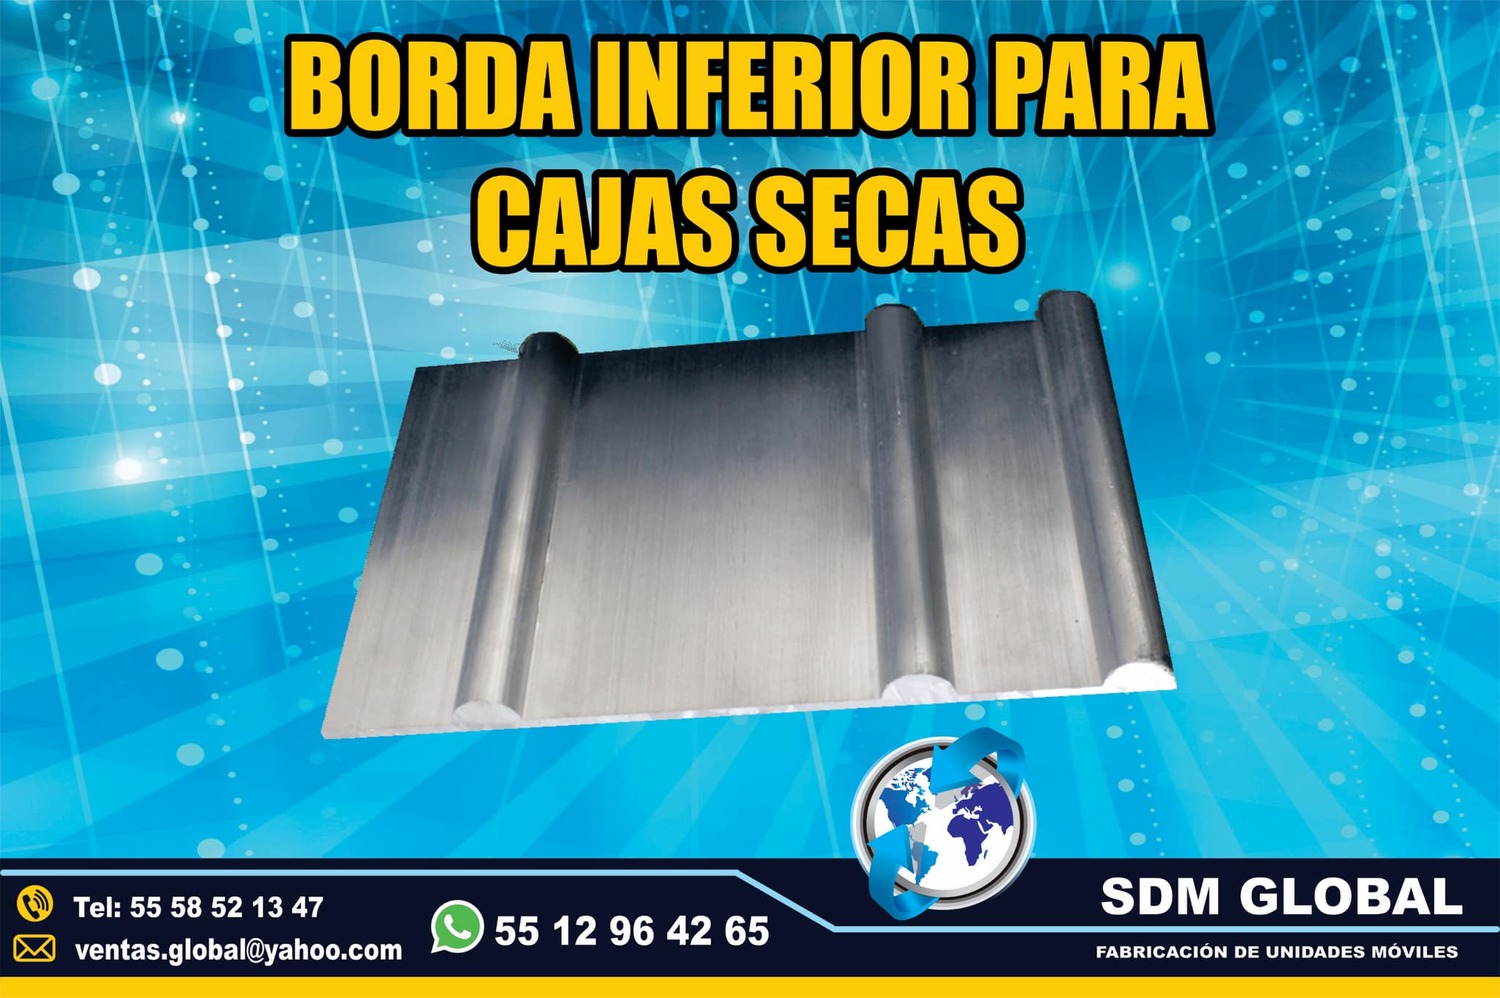 <span style="font-weight: bold;">Venta de Borda de aluminio para cajas y carrocerias plataformas remolques en Sdm Global</span>